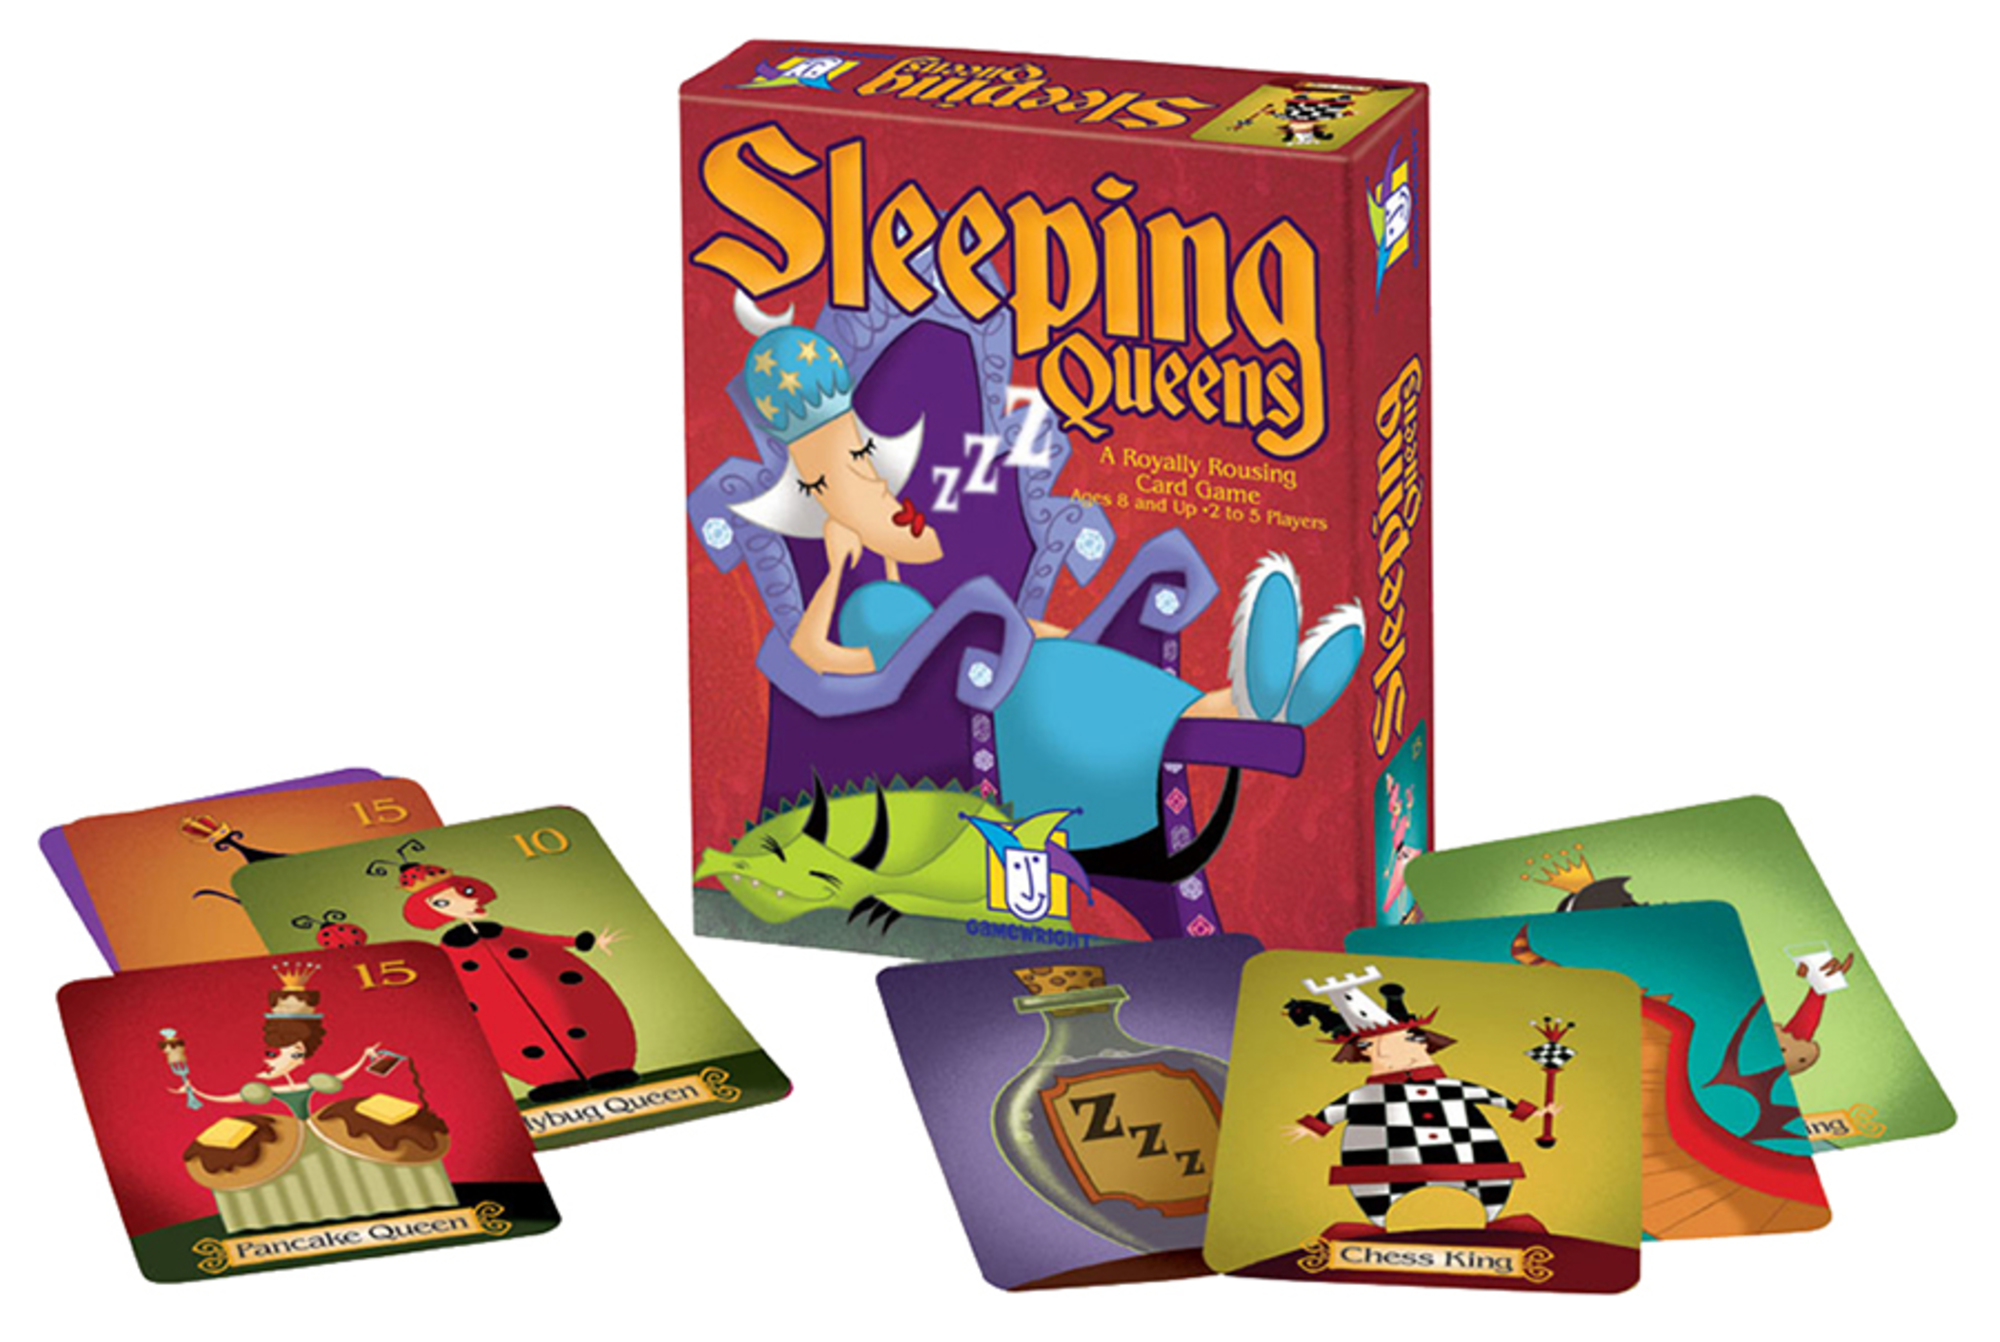 Sleeping Queen games image